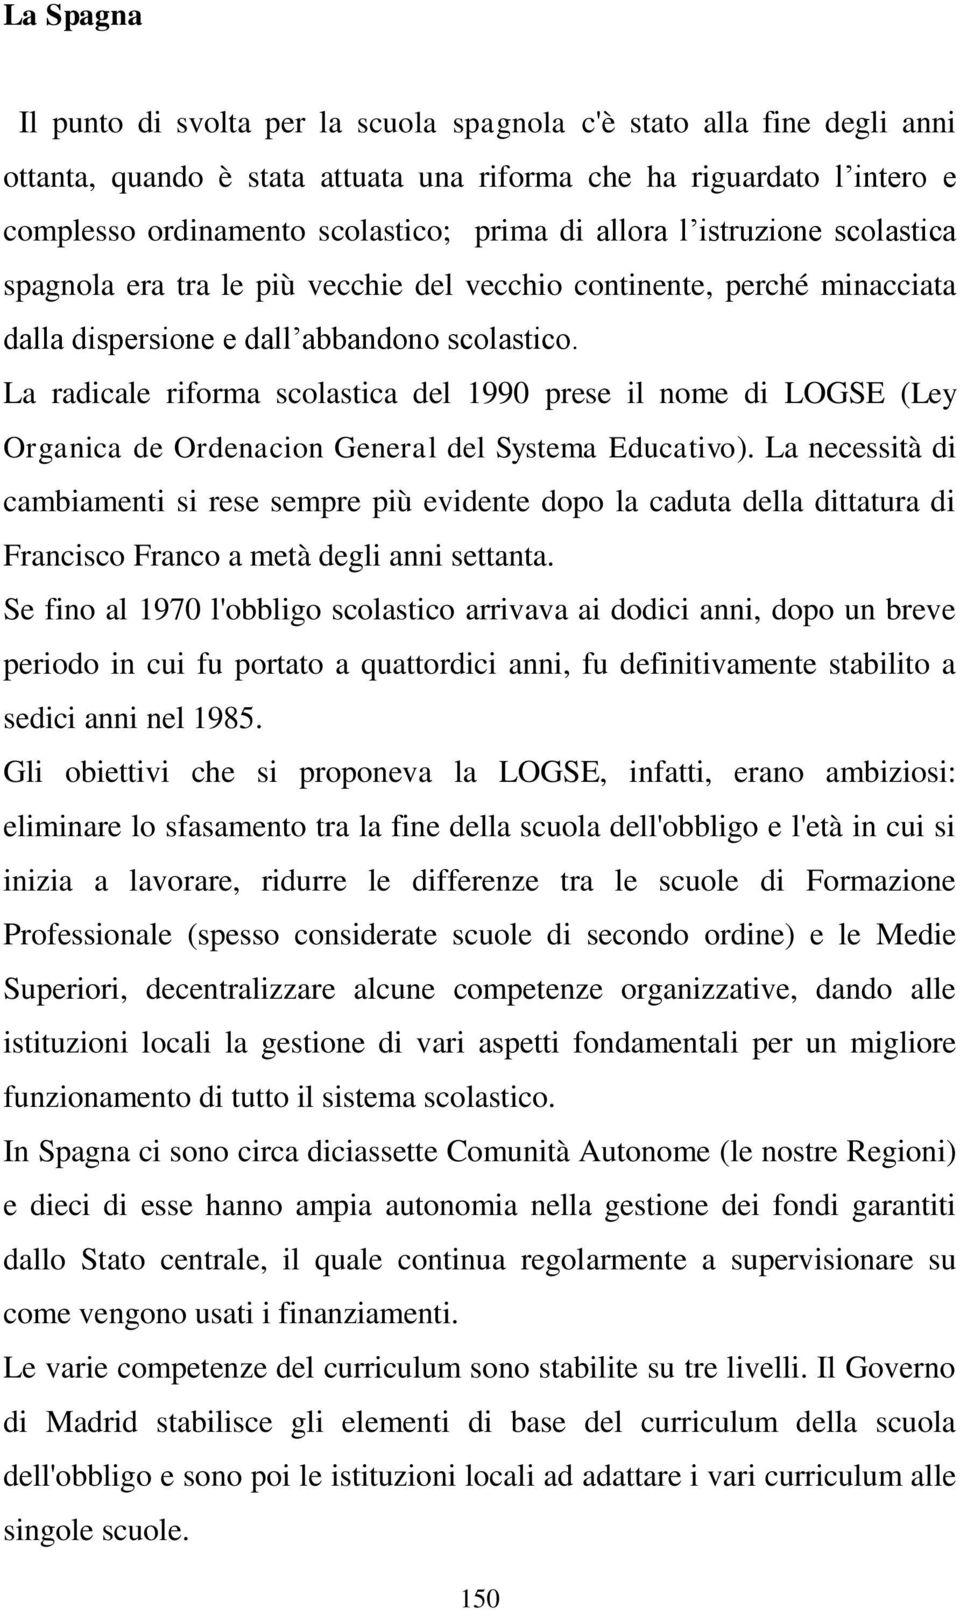 La radicale riforma scolastica del 1990 prese il nome di LOGSE (Ley Organica de Ordenacion General del Systema Educativo).